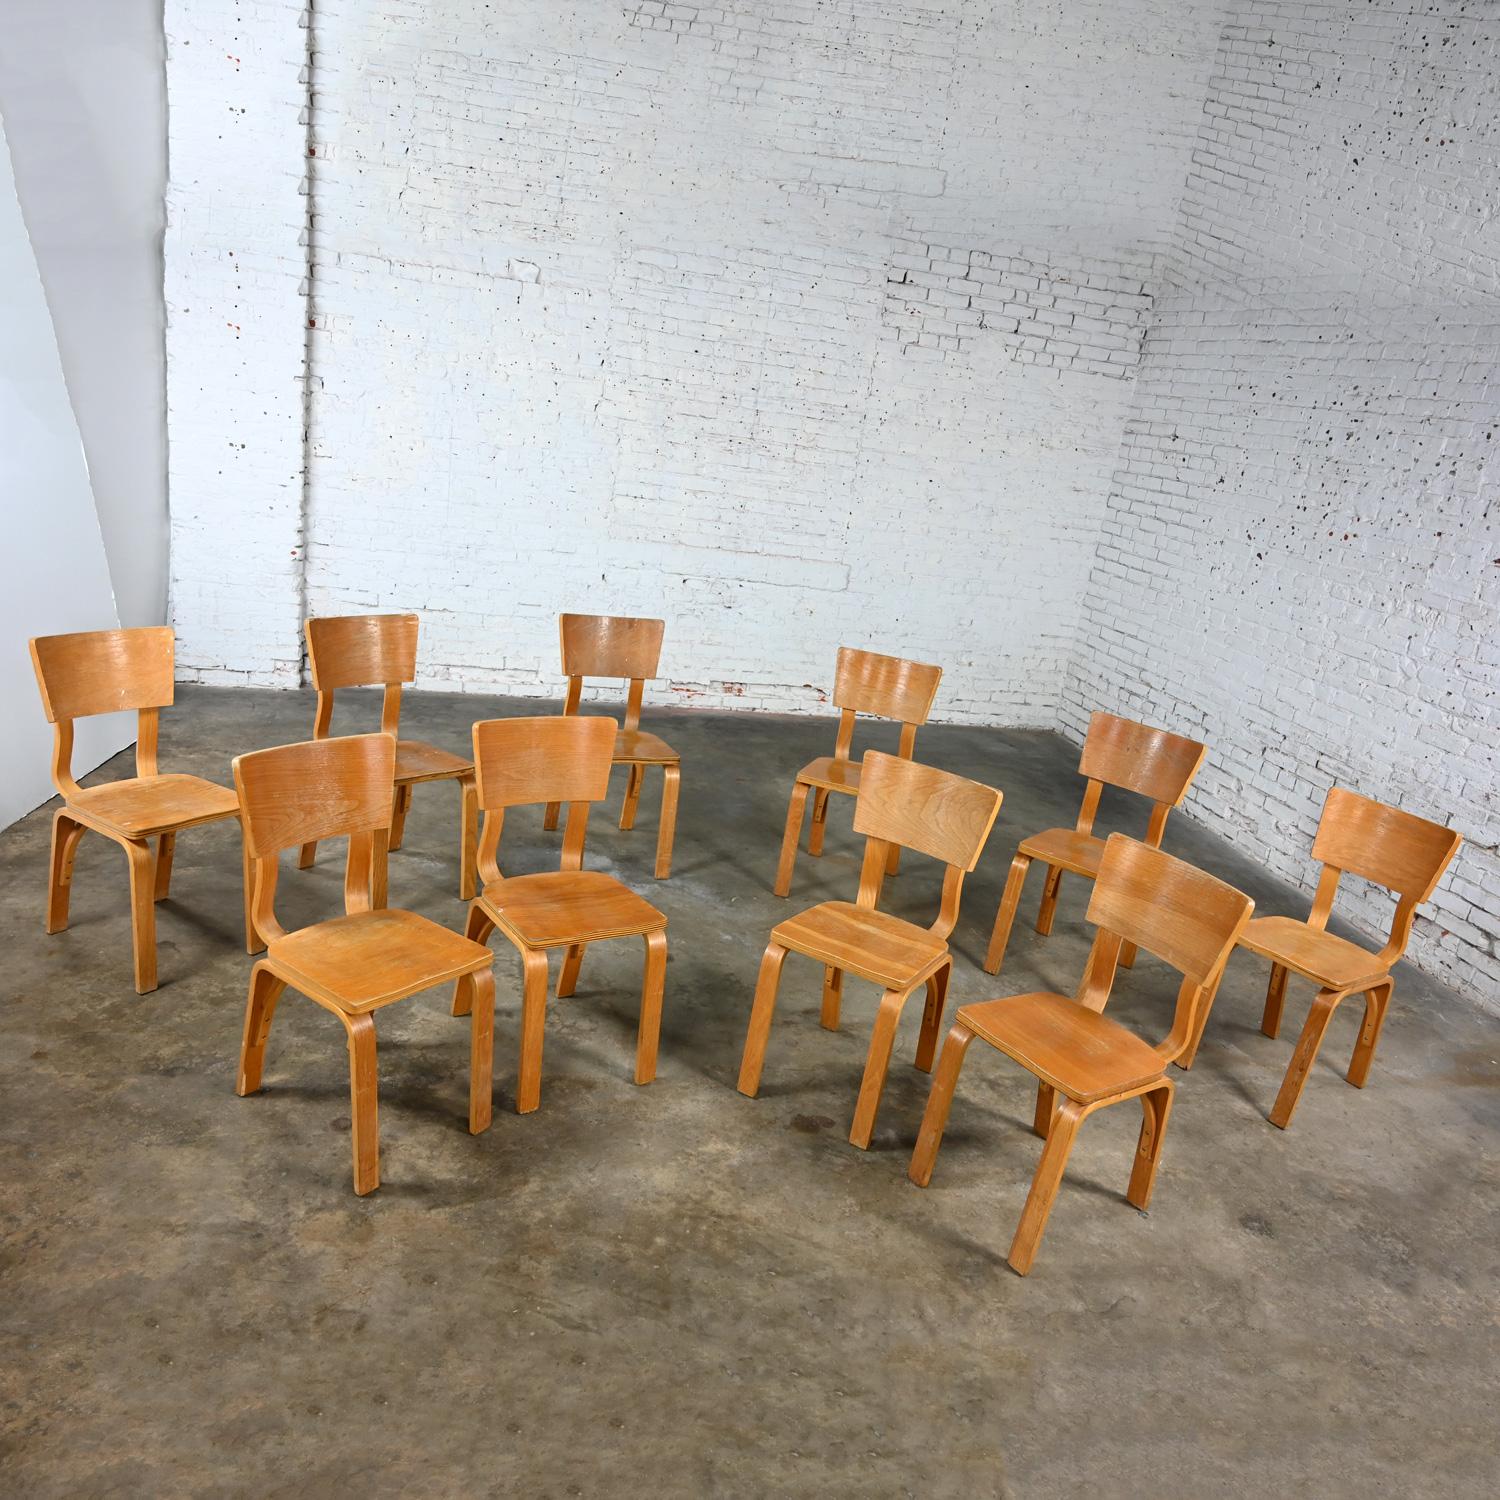 Chêne Lot de 10 chaises de salle à manger MCM Thonet #1216 en contreplaqué de chêne courbé, assise en selle, arc simple en vente